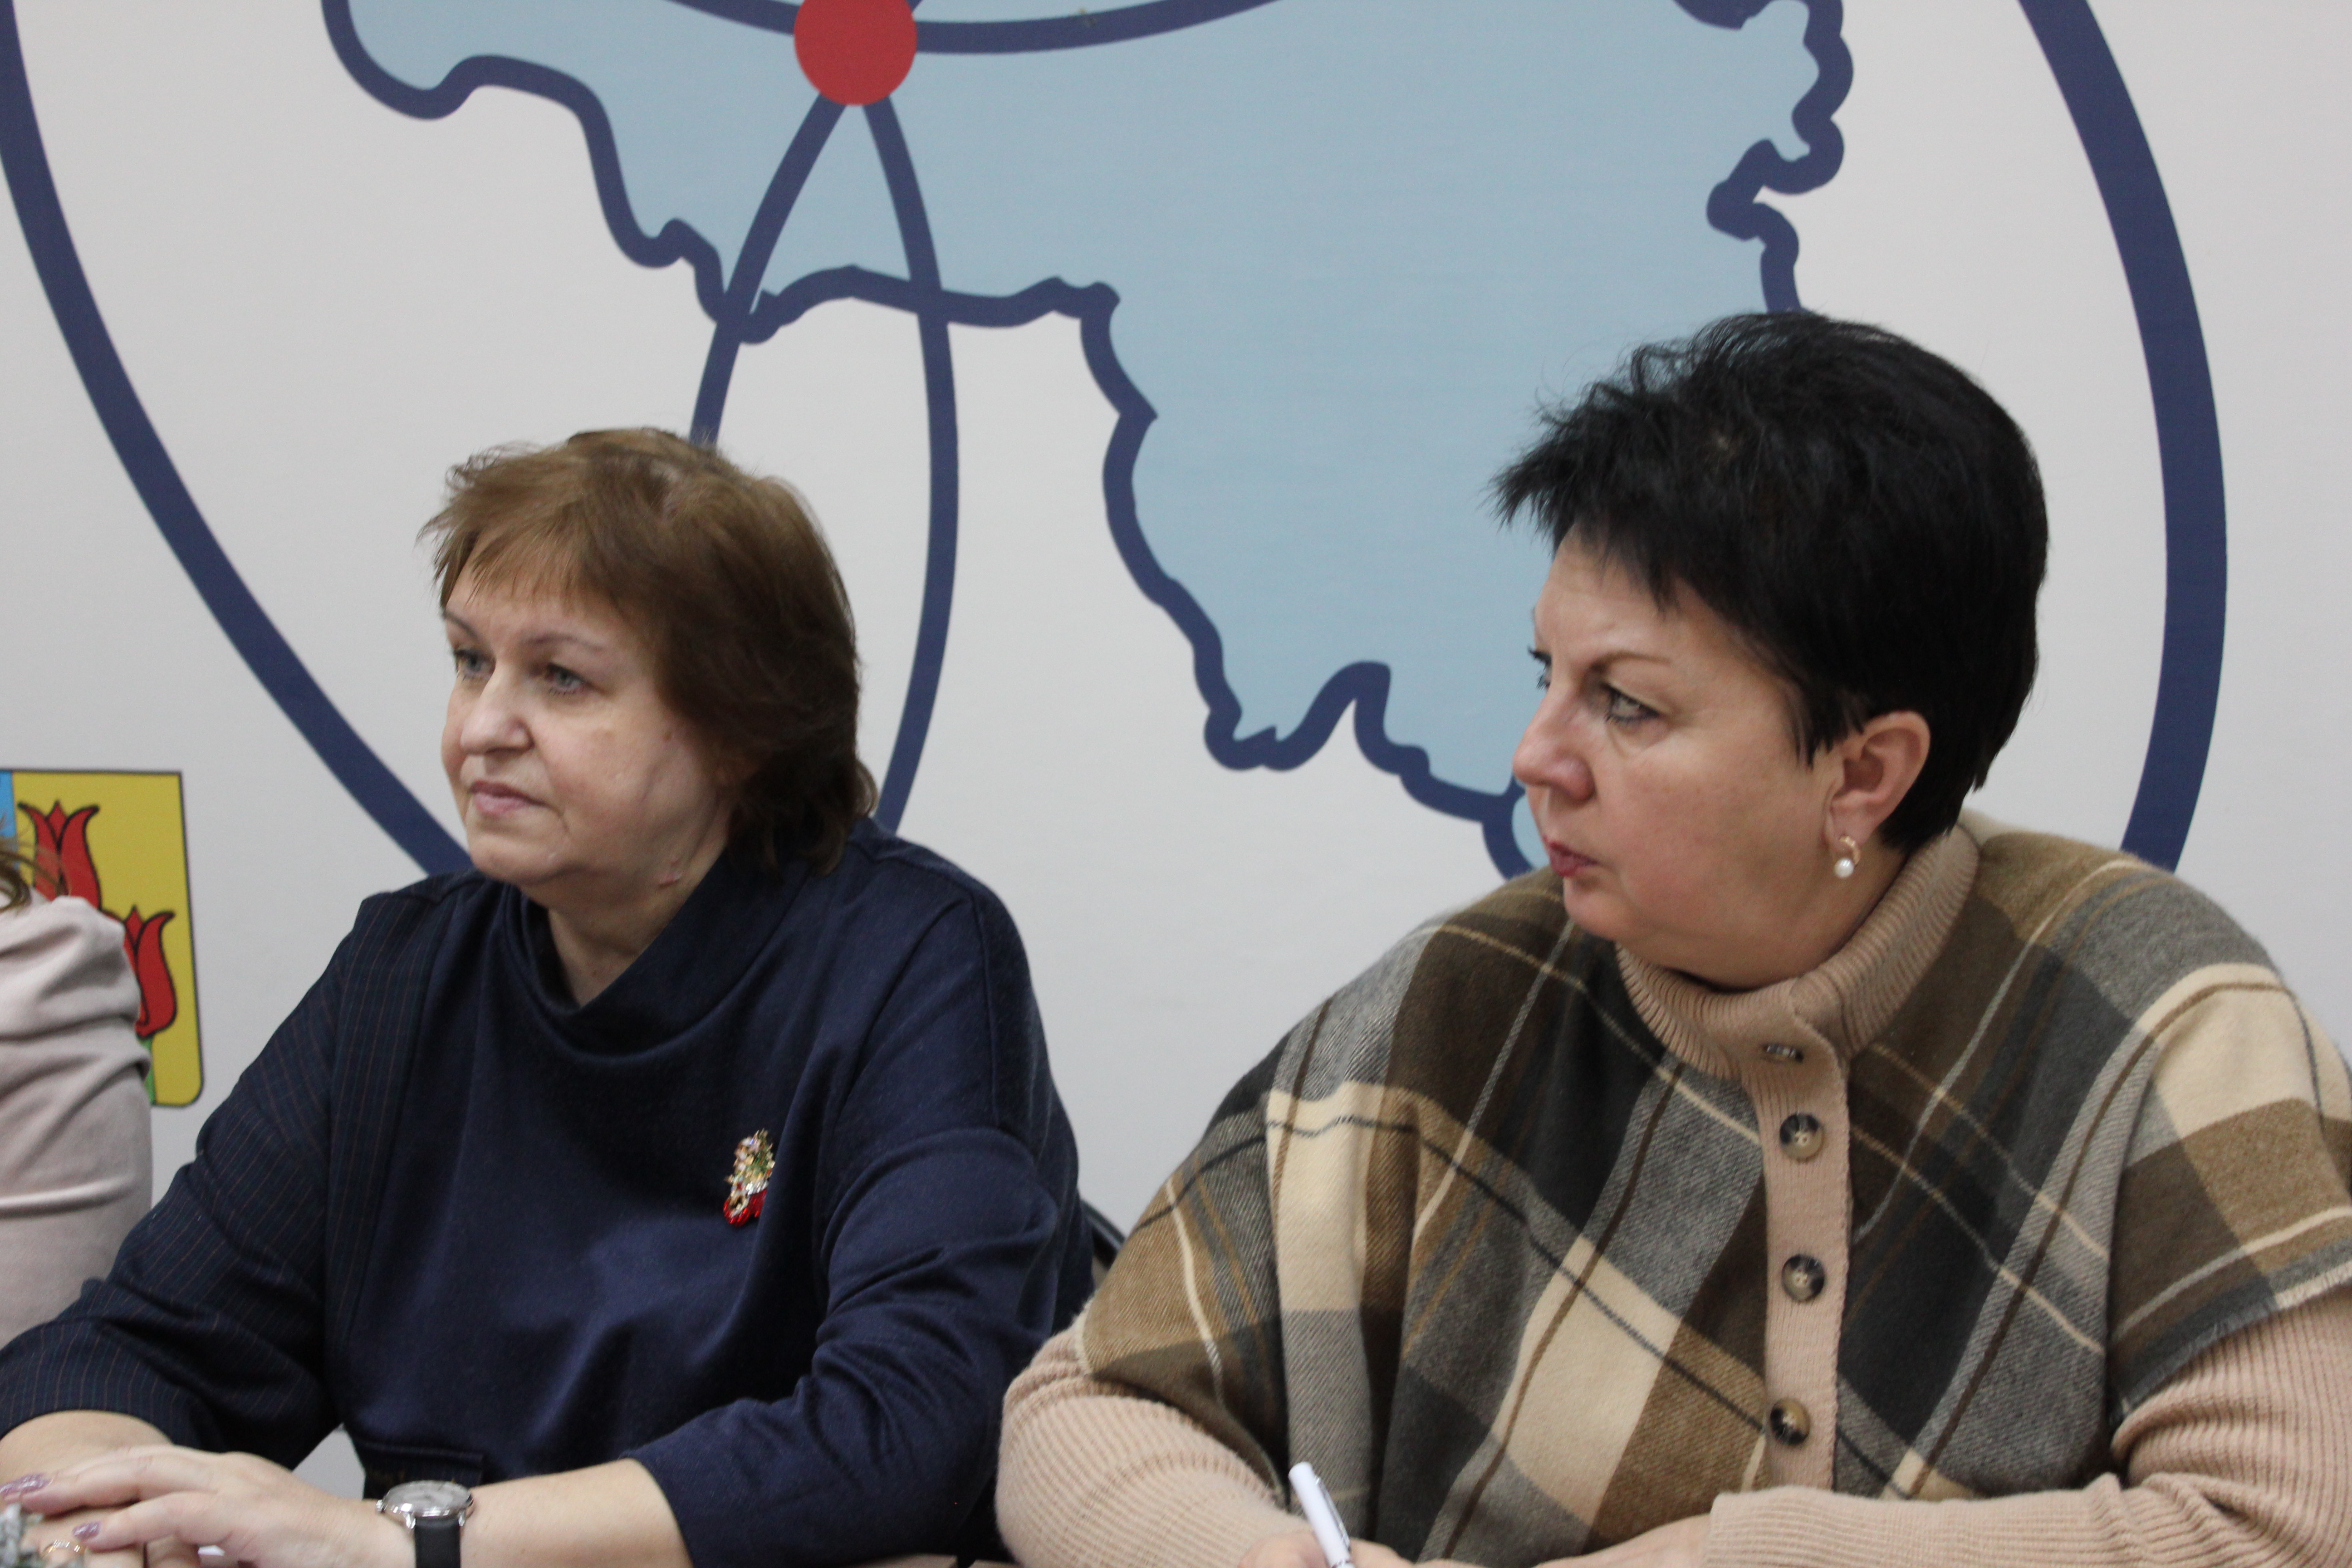 15 декабря прошла очередная встреча в рамках проекта Ассоциации «Совет муниципальных образований Белгородской области» «Женское лидерство».